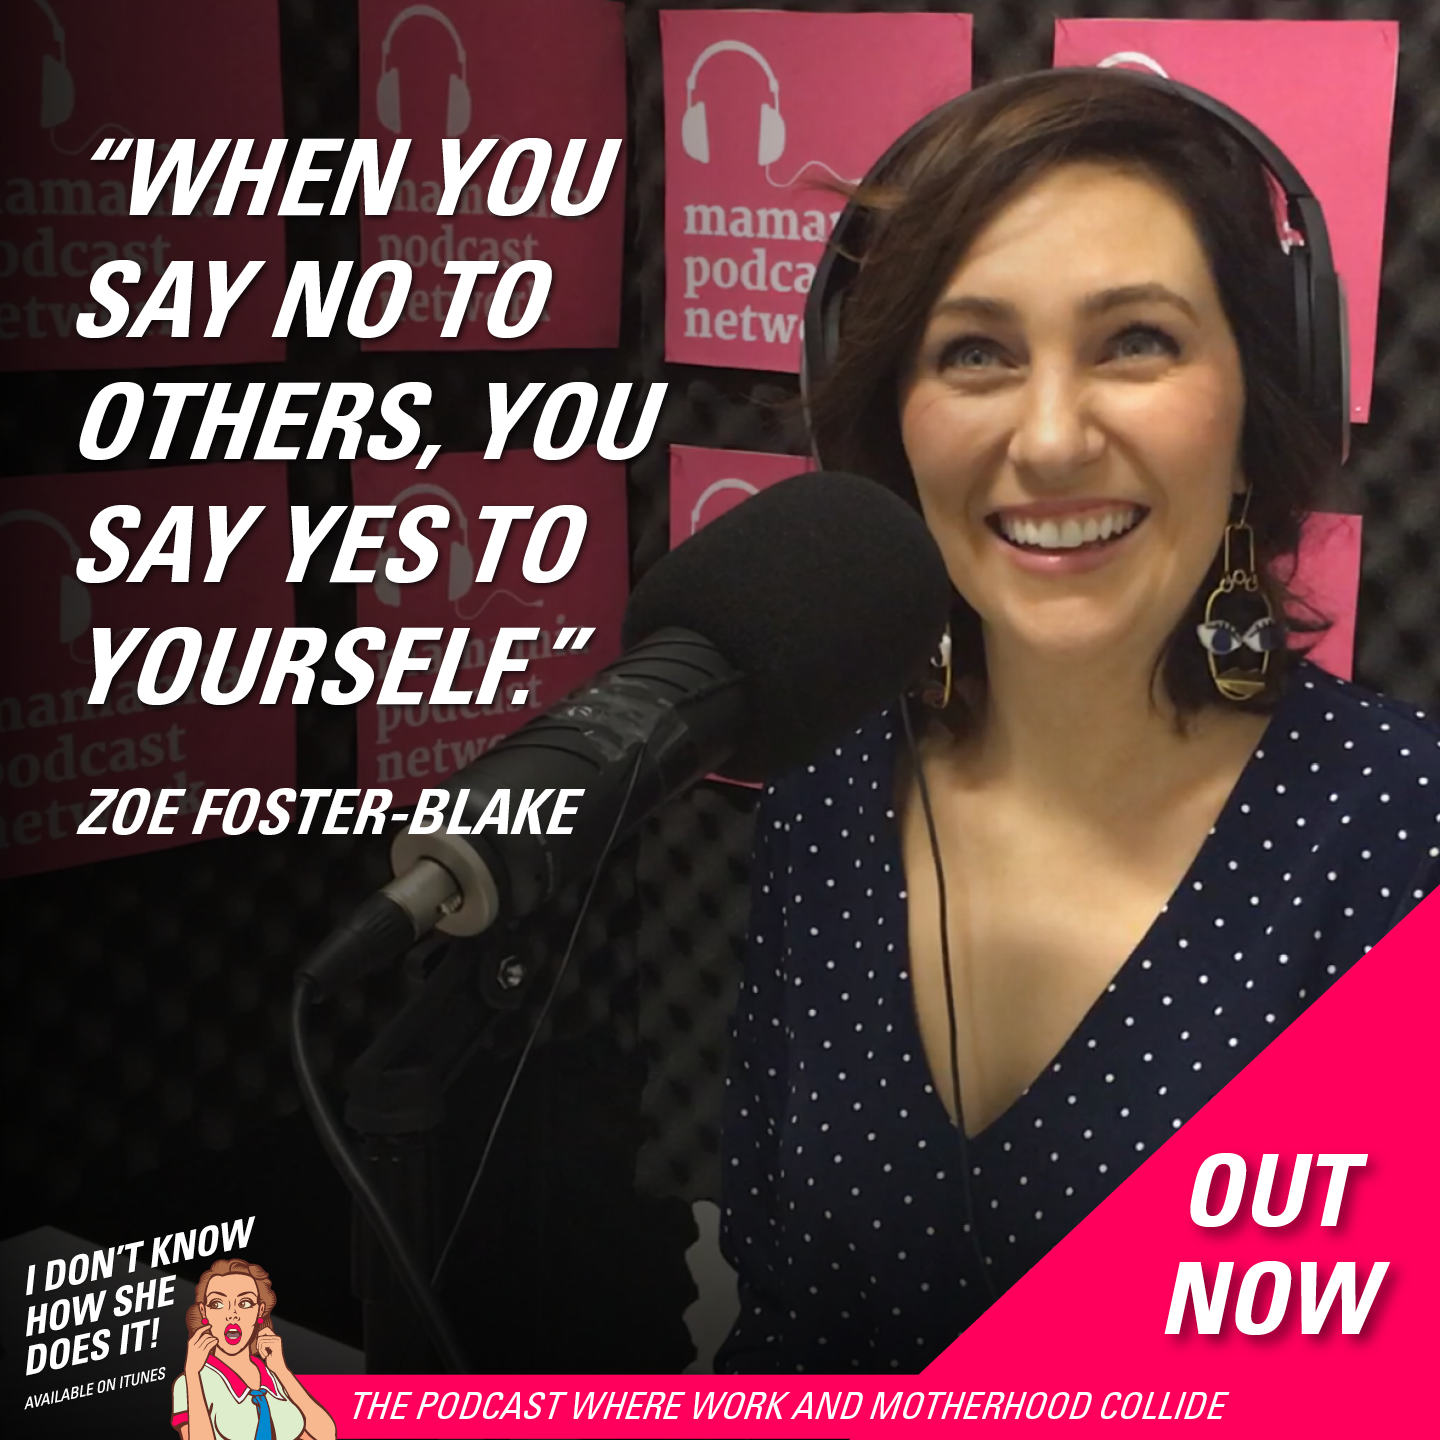 Zoe Foster-Blake's beauty advice for busy women.